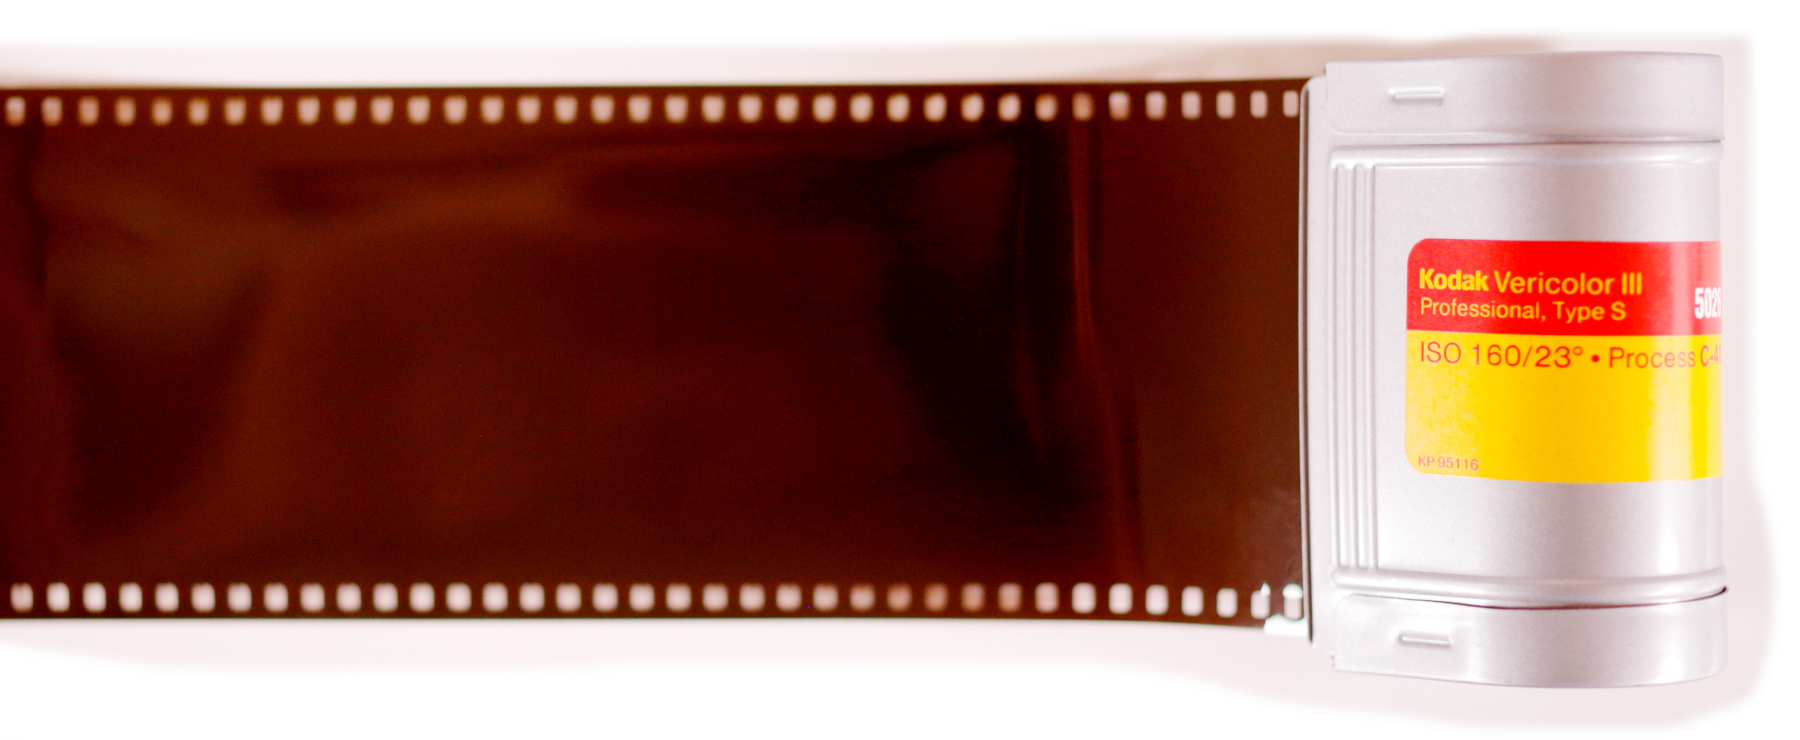 70mm film